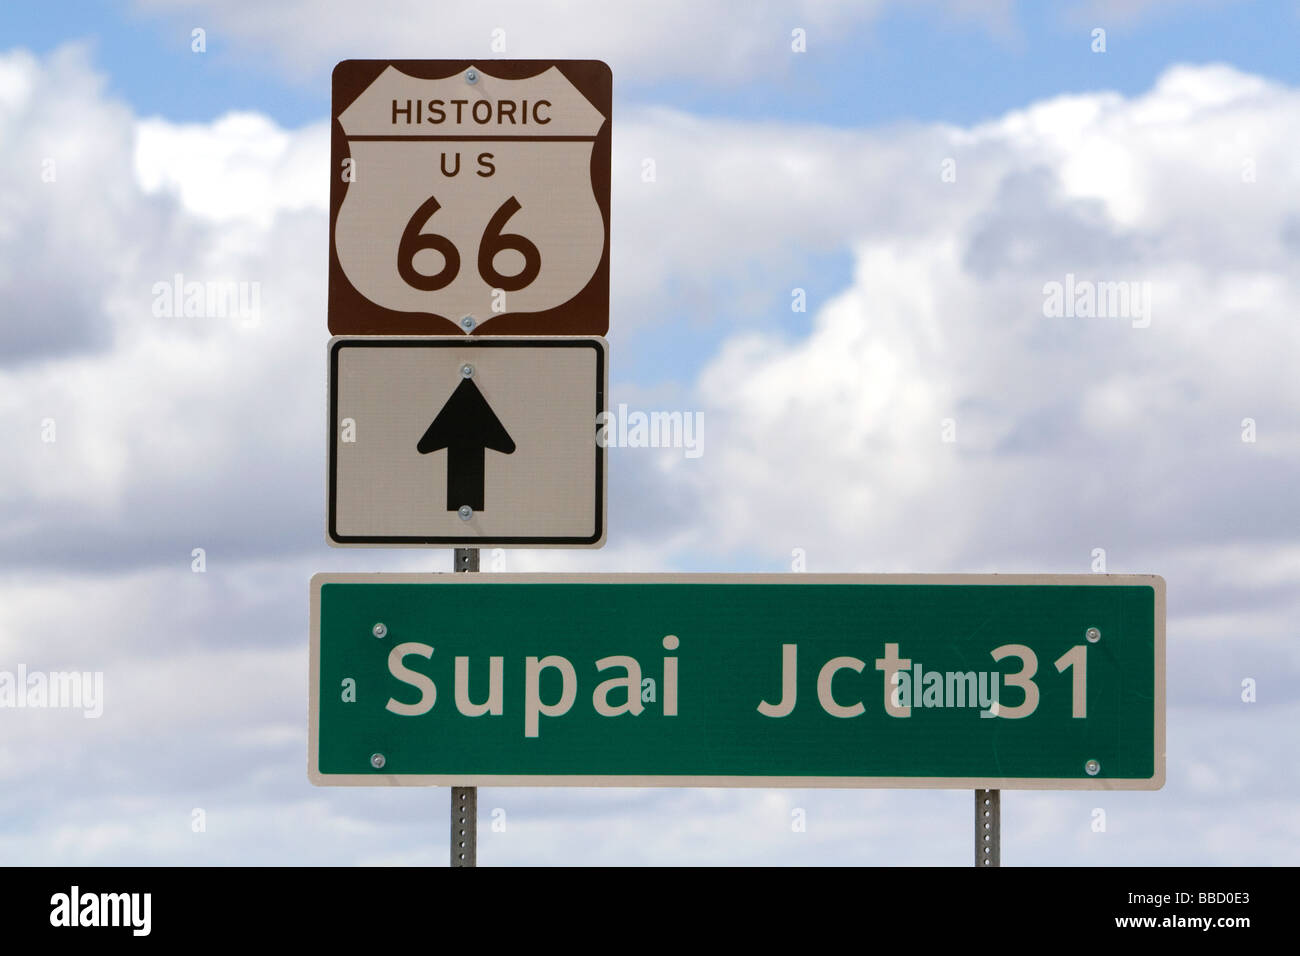 Signalisation routière pour S U historique route 66 près de Seligman, Arizona USA Banque D'Images